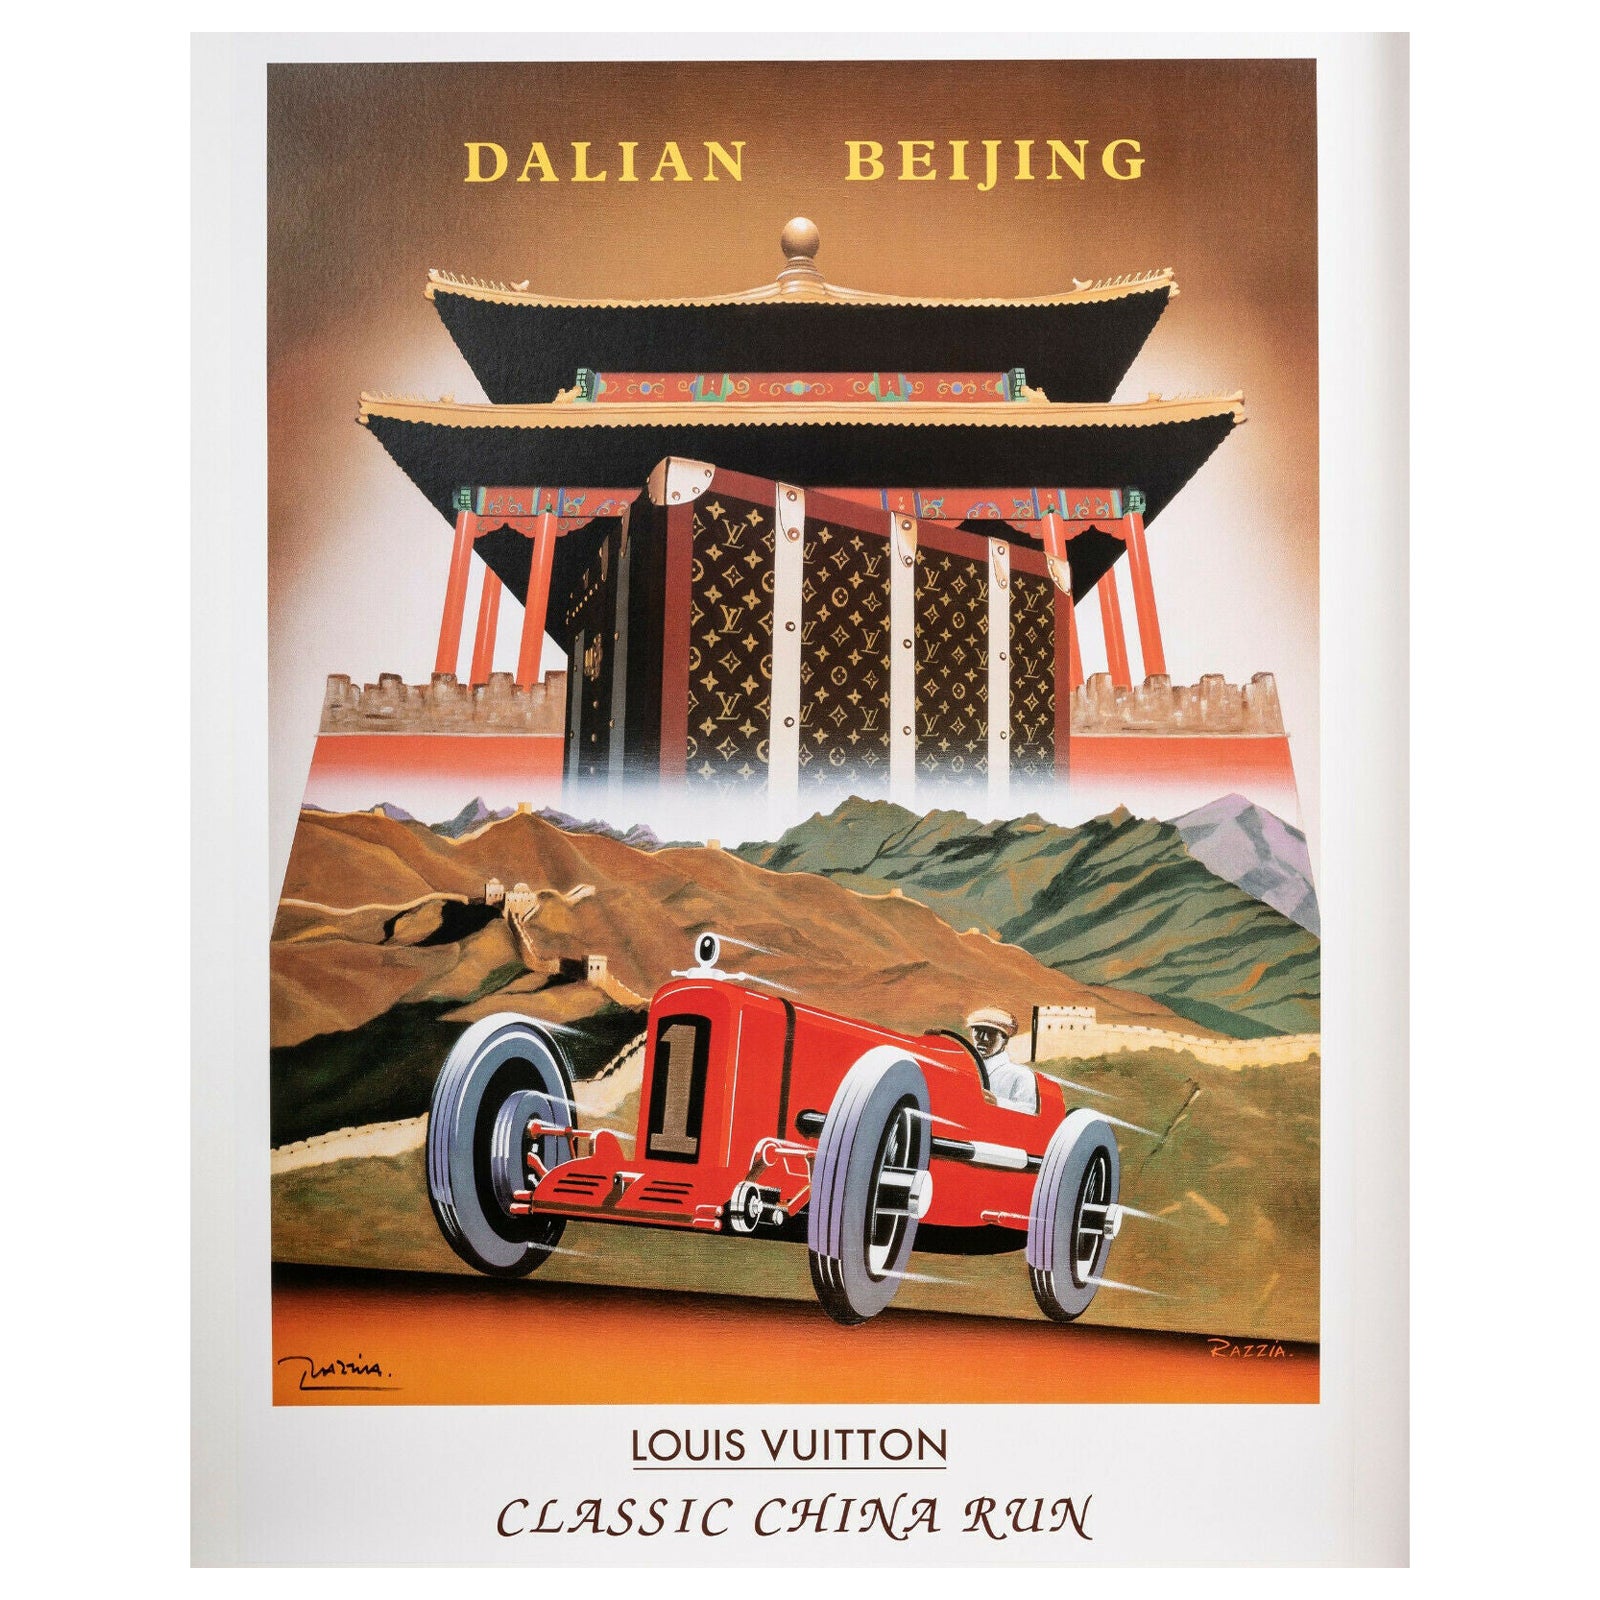 LOUIS VUITTON - Dalian Beijing - A poster Classic China…